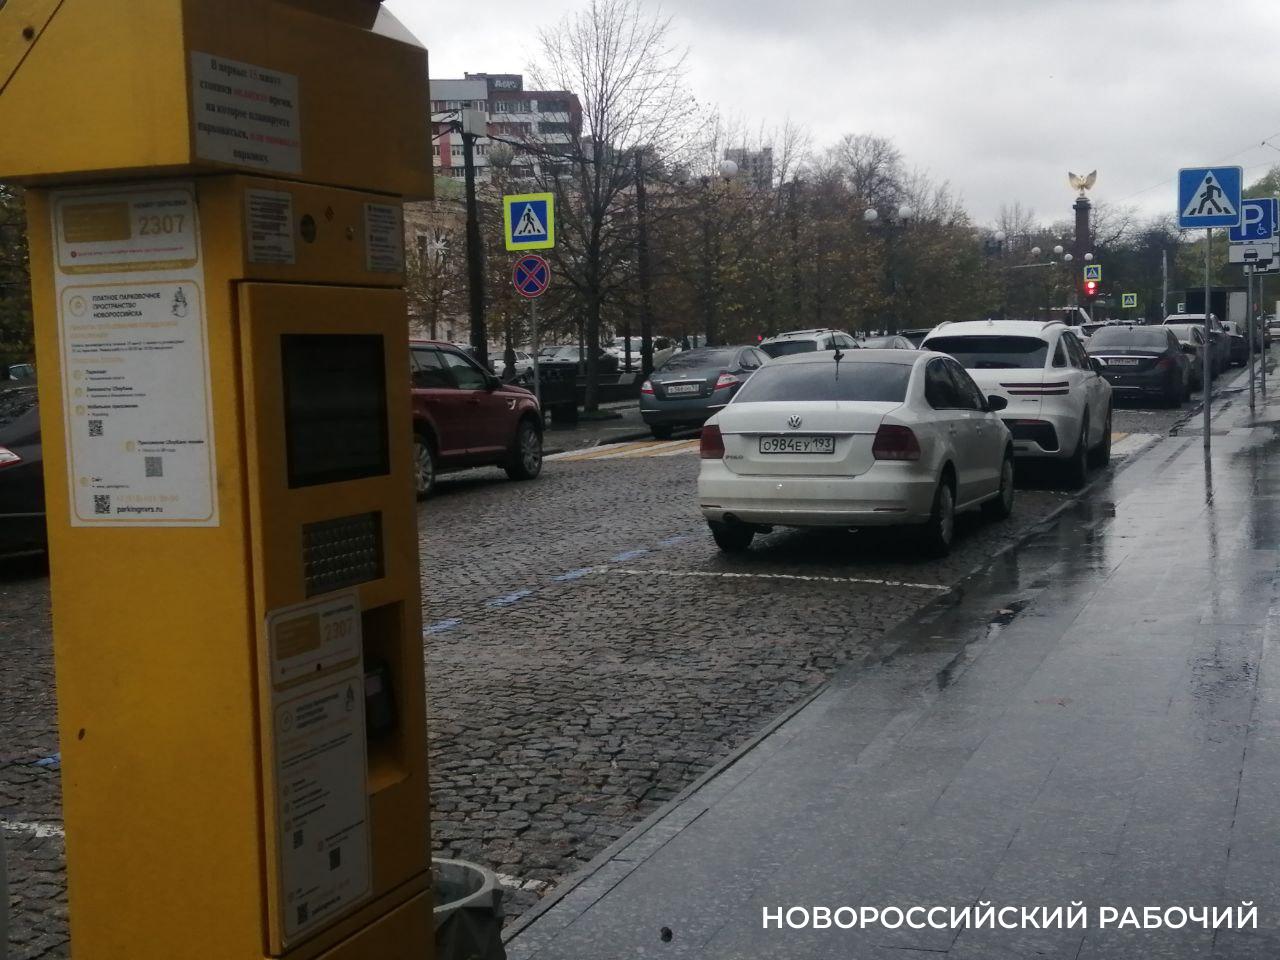 В Новороссийске  — 8 дней «парковочной амнистии». Где можно парковаться бесплатно?